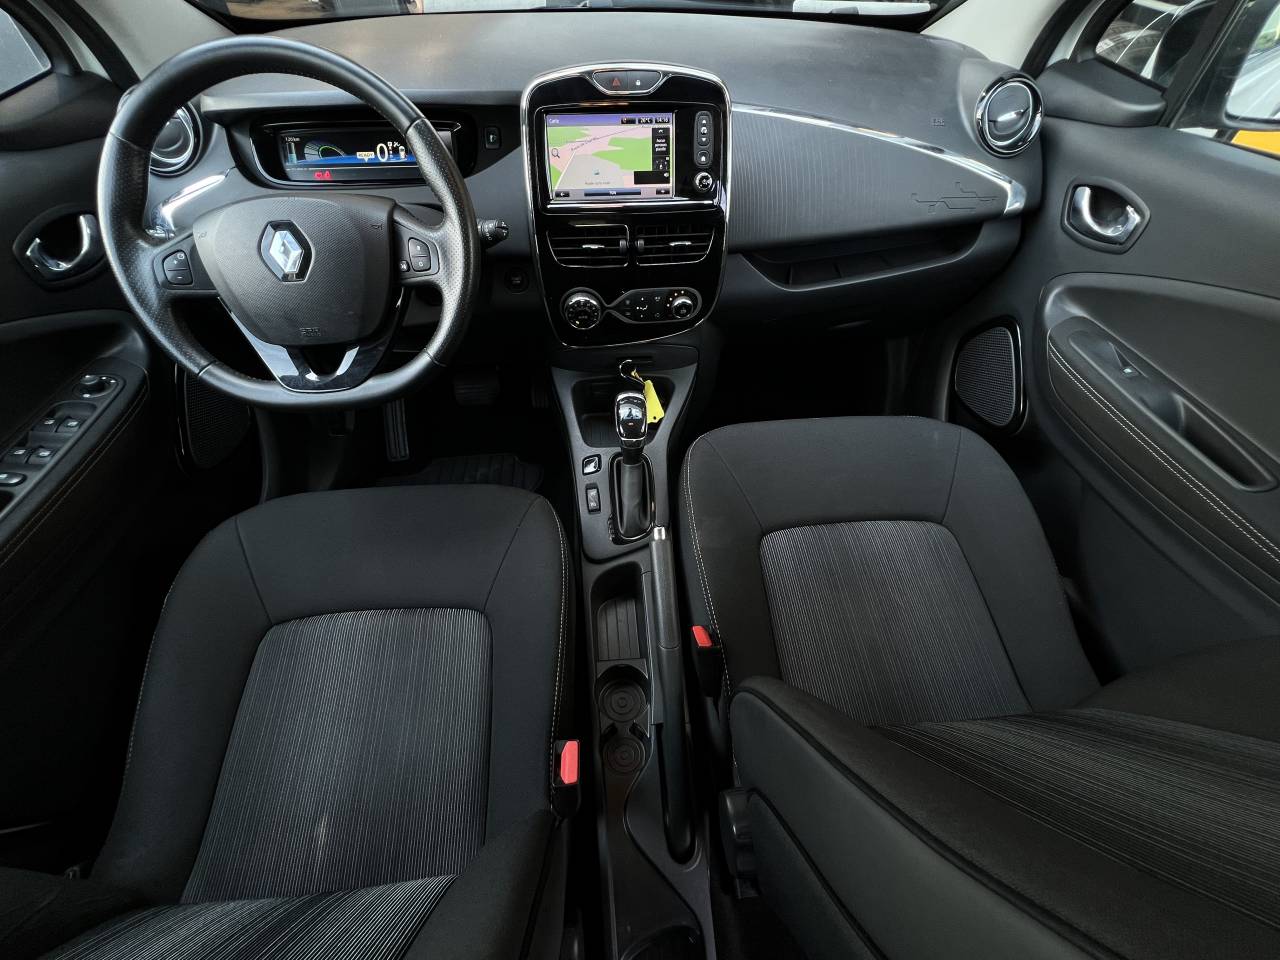 Renault ZOE Intens R90 Achat Integral (Pas de Location de Batterie) groupe Vergnon